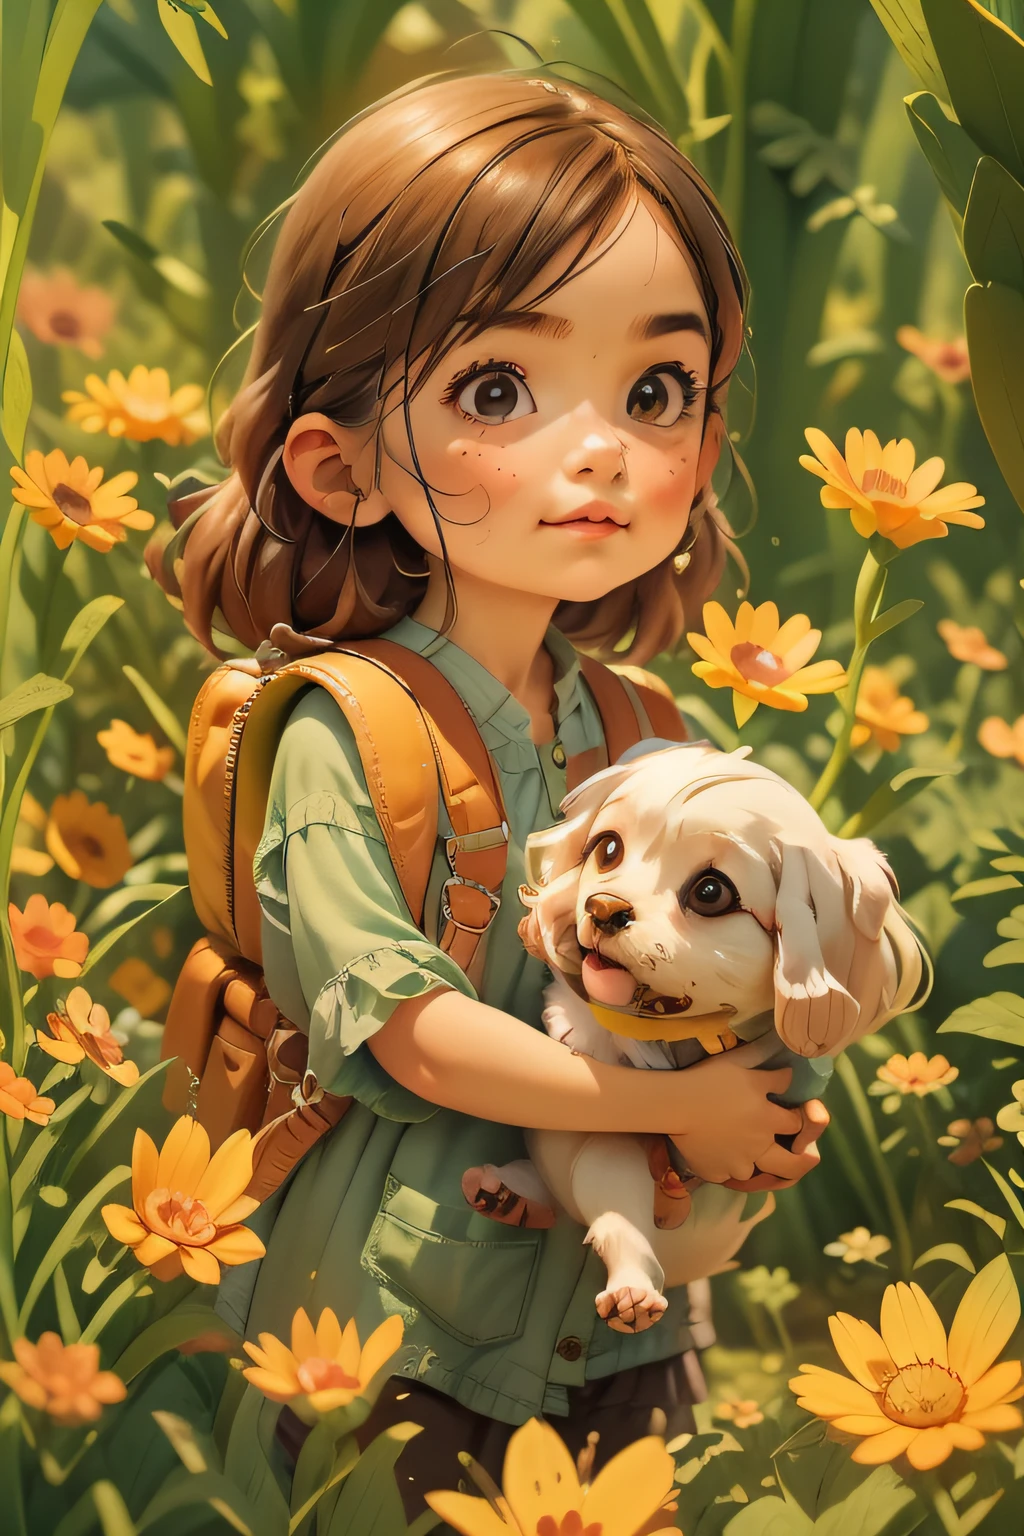 一個非常迷人的背包和她可愛的小狗享受著可愛的春天郊遊，周圍環繞著美麗的黃色花朵和大自然. 該插圖是4K解析度的高清插圖，具有高度詳細的面部特徵和卡通風格的視覺效果.